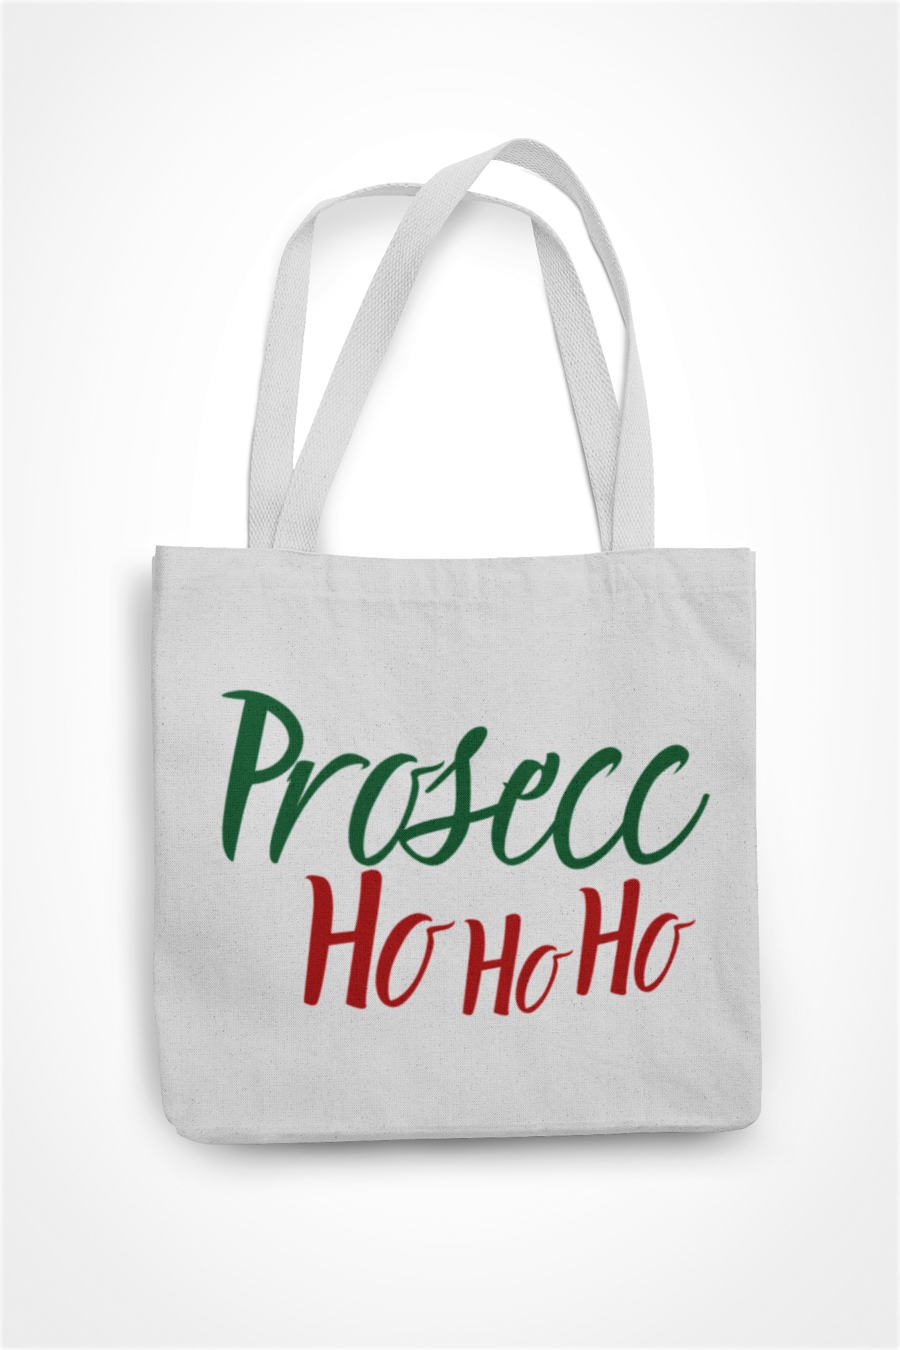 Prosecc HO HO HO - Funny Christmas Tote Bag - Shopper Bag xmas Gift